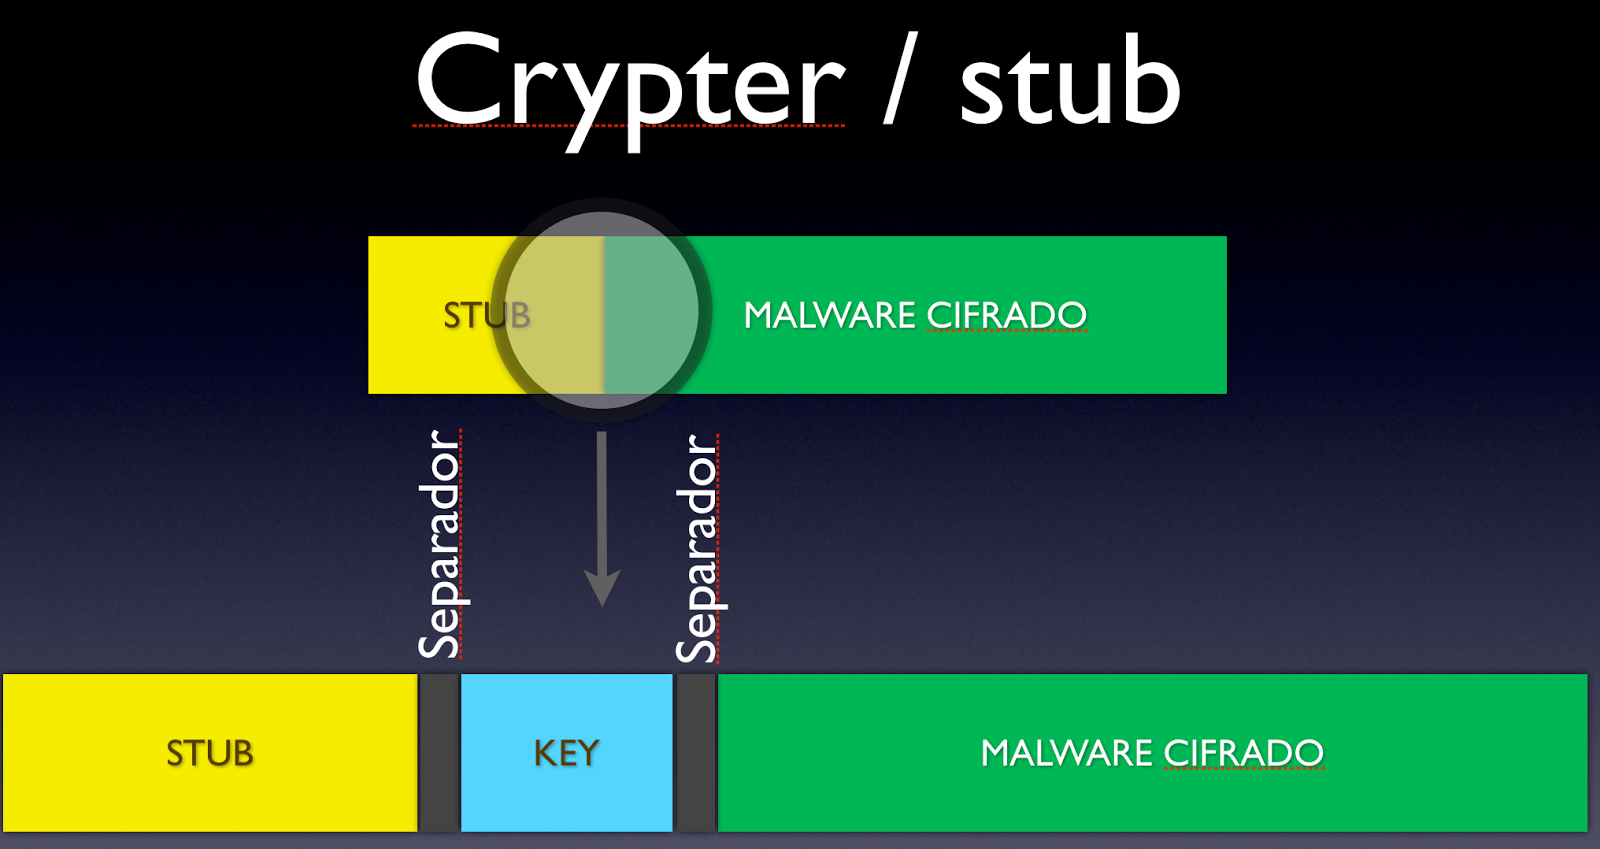 conjunto-crypter-stub-clave-separador.png